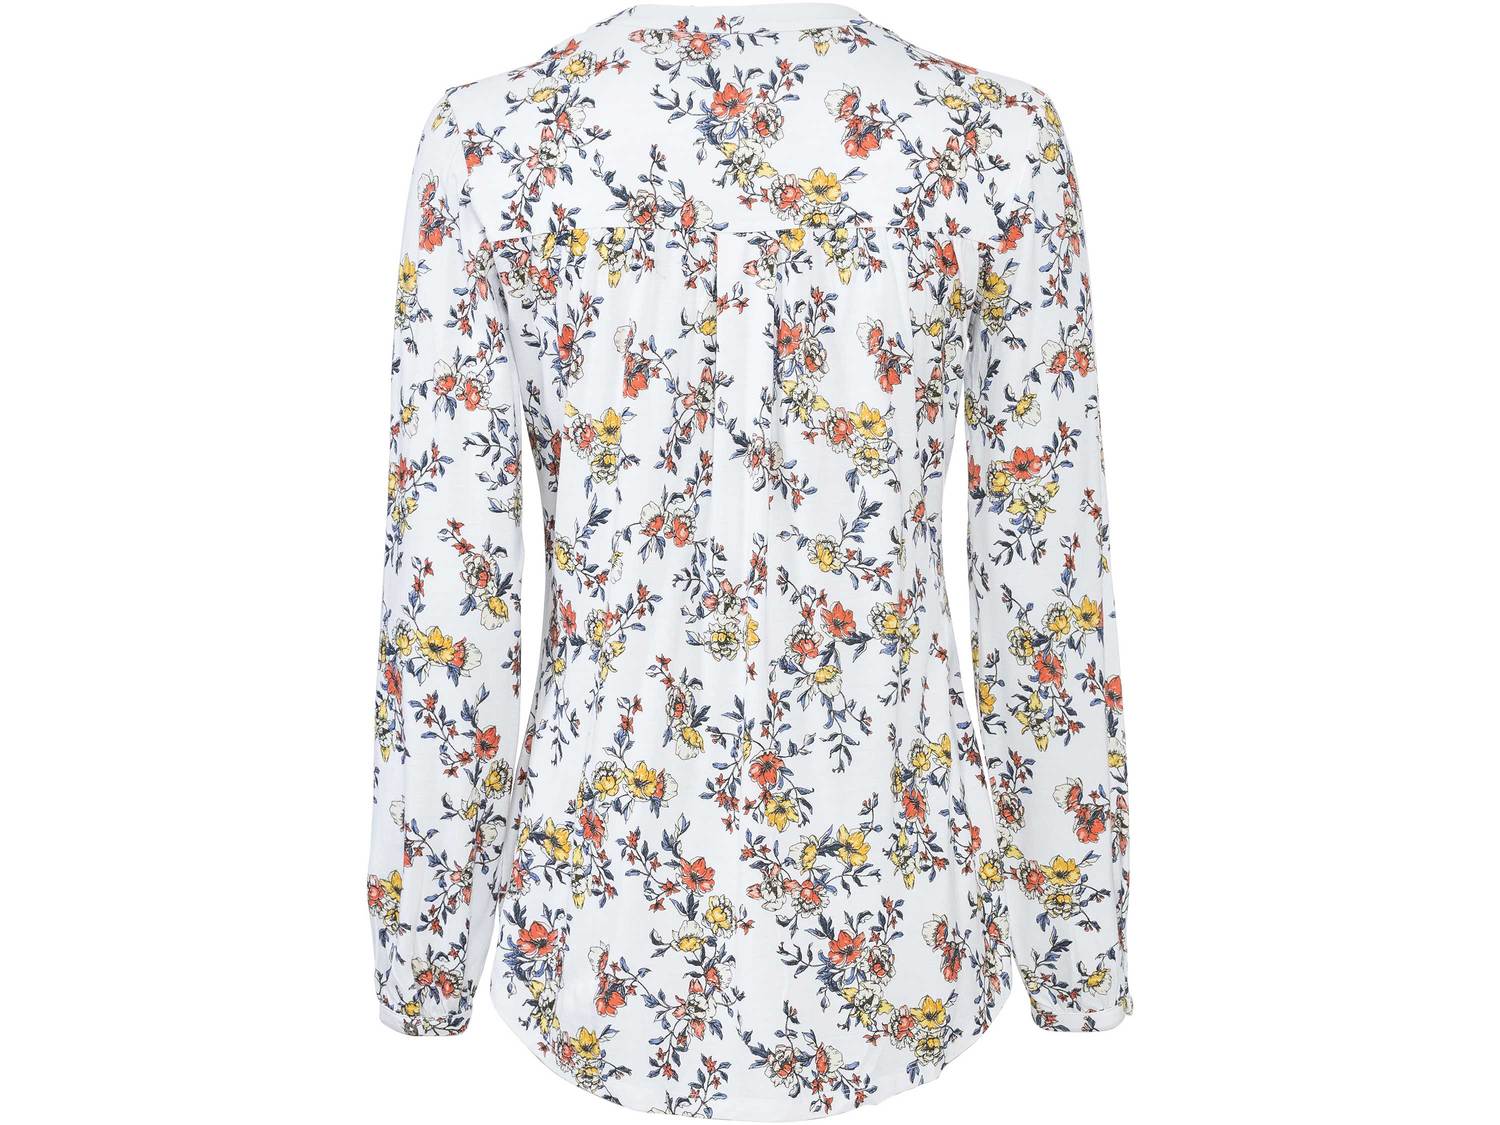 Bluzka damska z wiskozy Esmara, cena 39,99 PLN 
- romantyczne kwiatowe wzory 
- ...